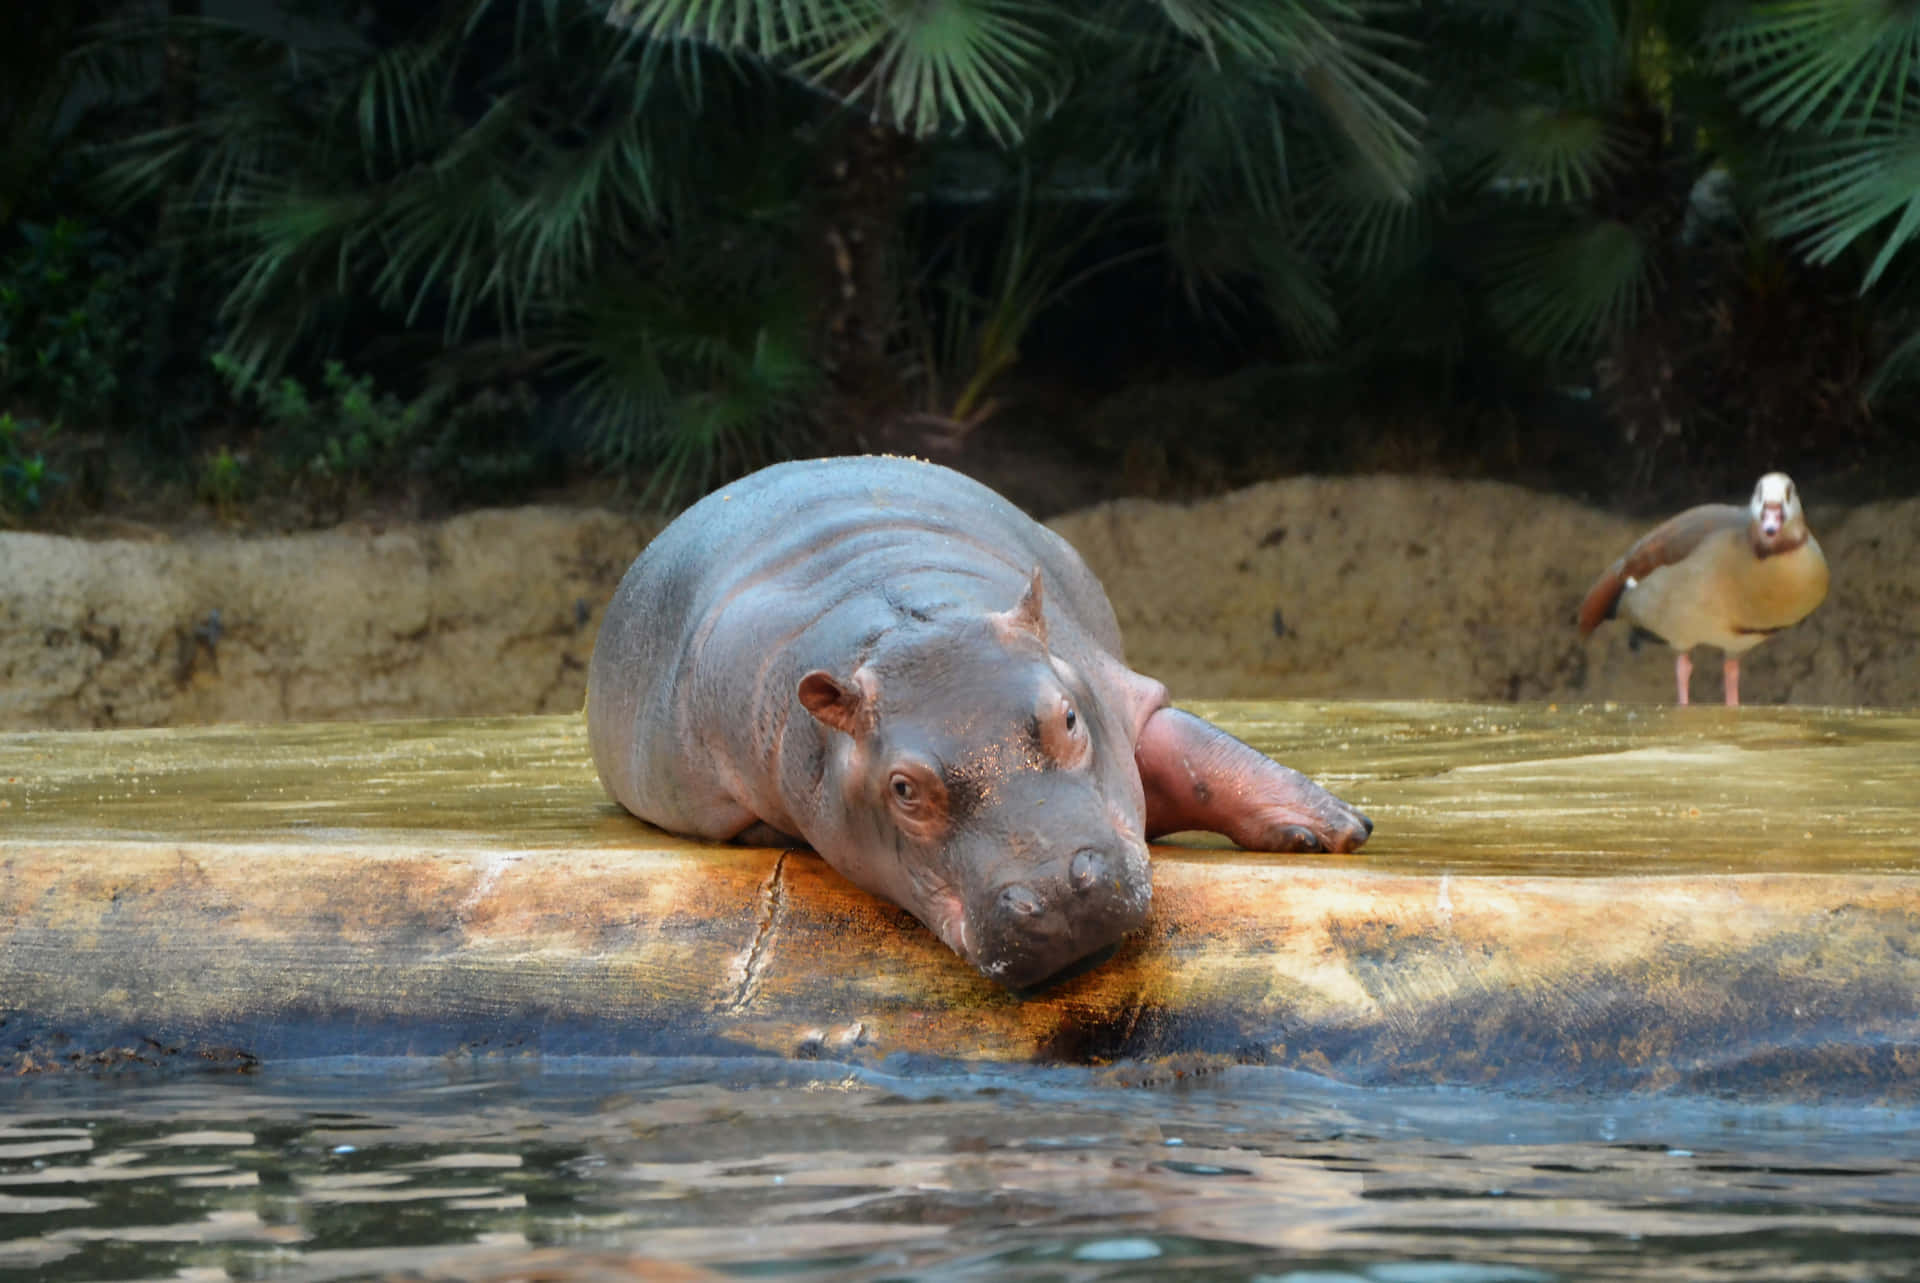 Imagende Un Bebé Hipopótamo Durmiendo En Un Río.